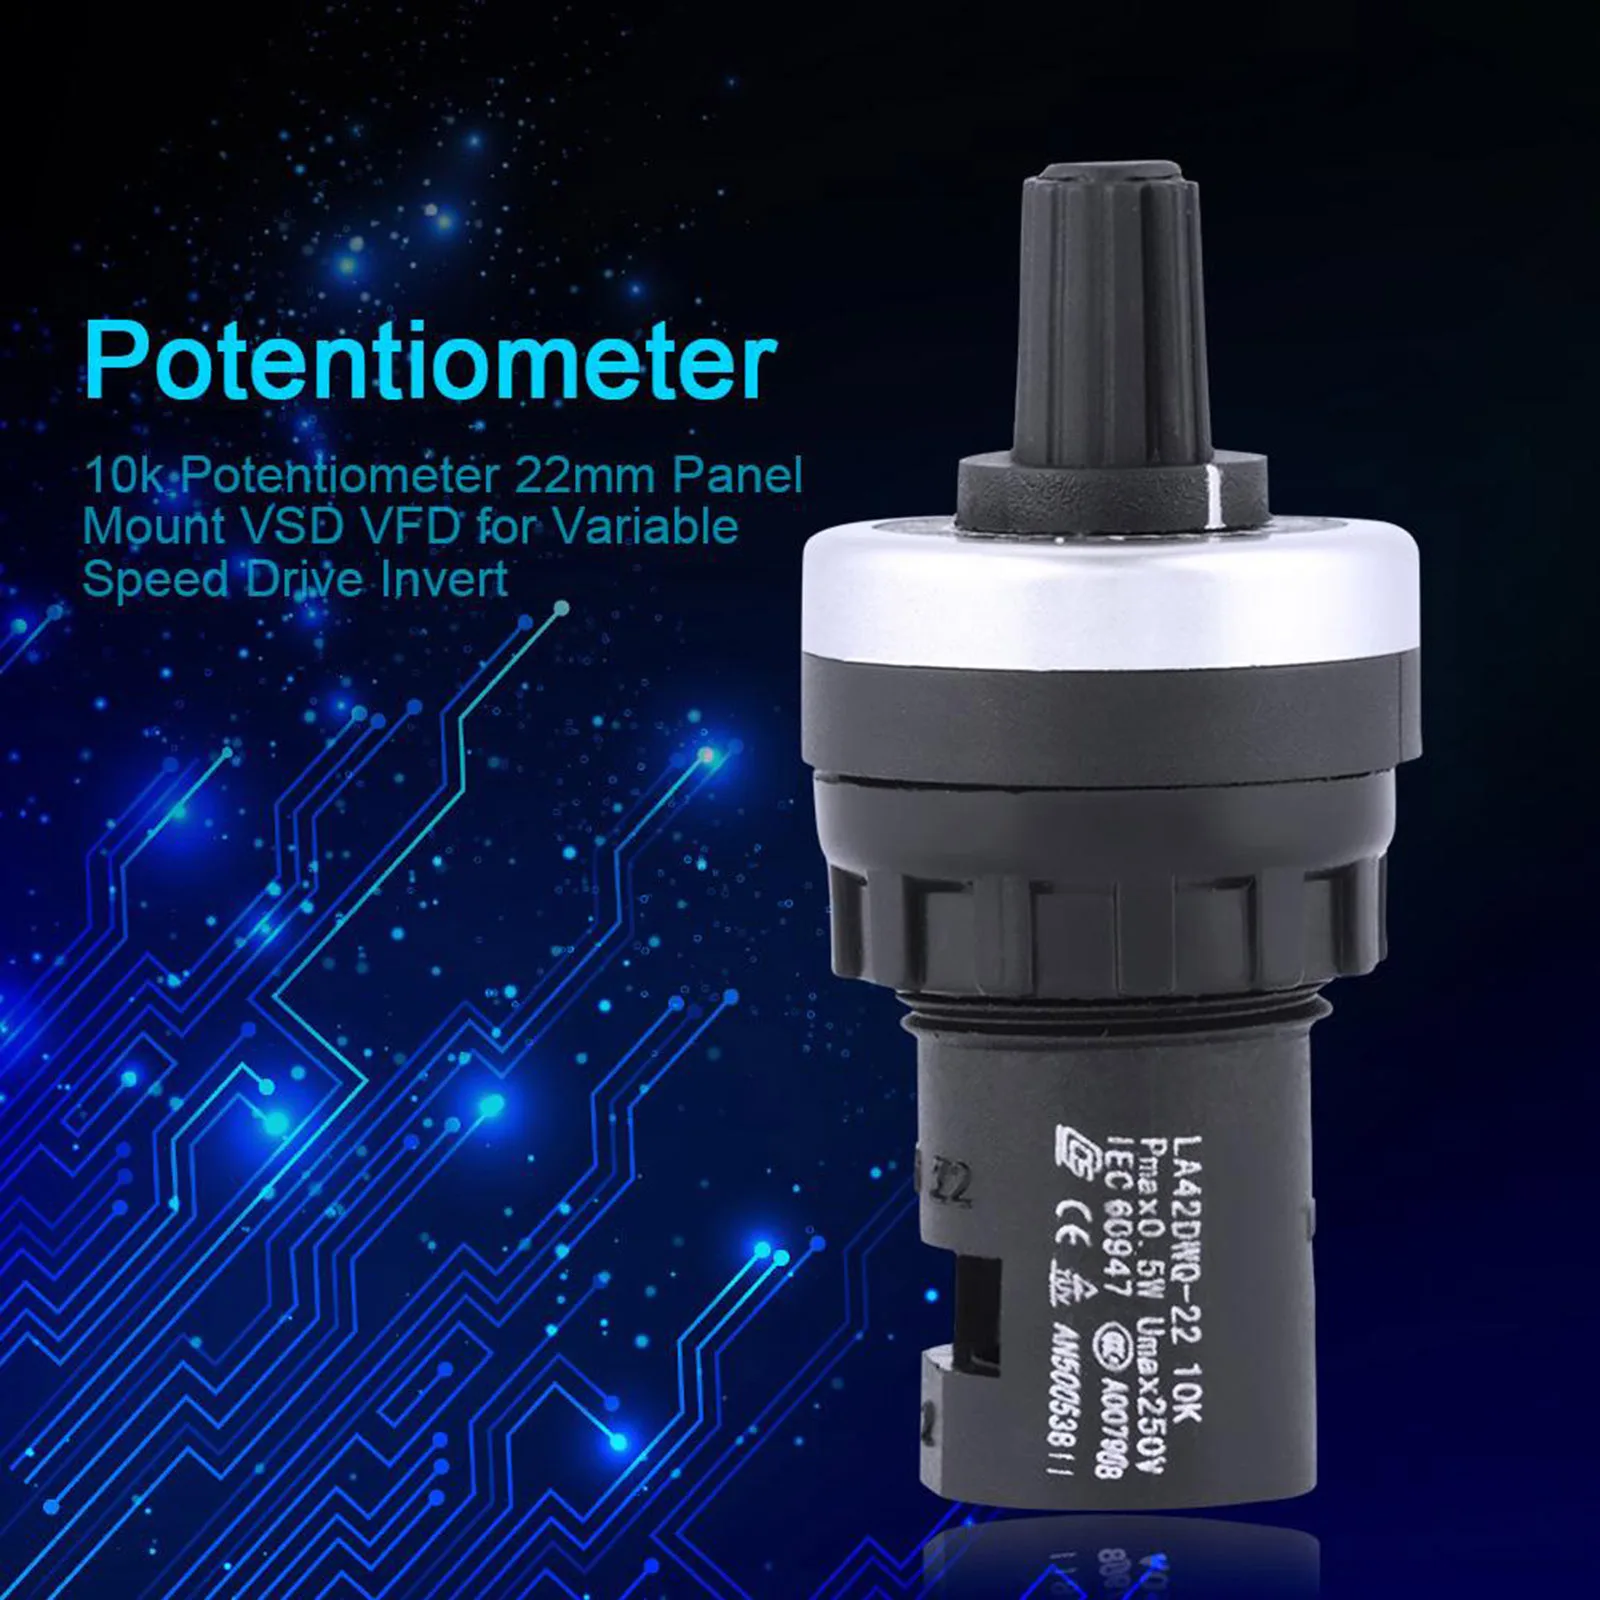 10k potentiometer 22mm panel mount VFD VSD for variable speed drive invert K85 